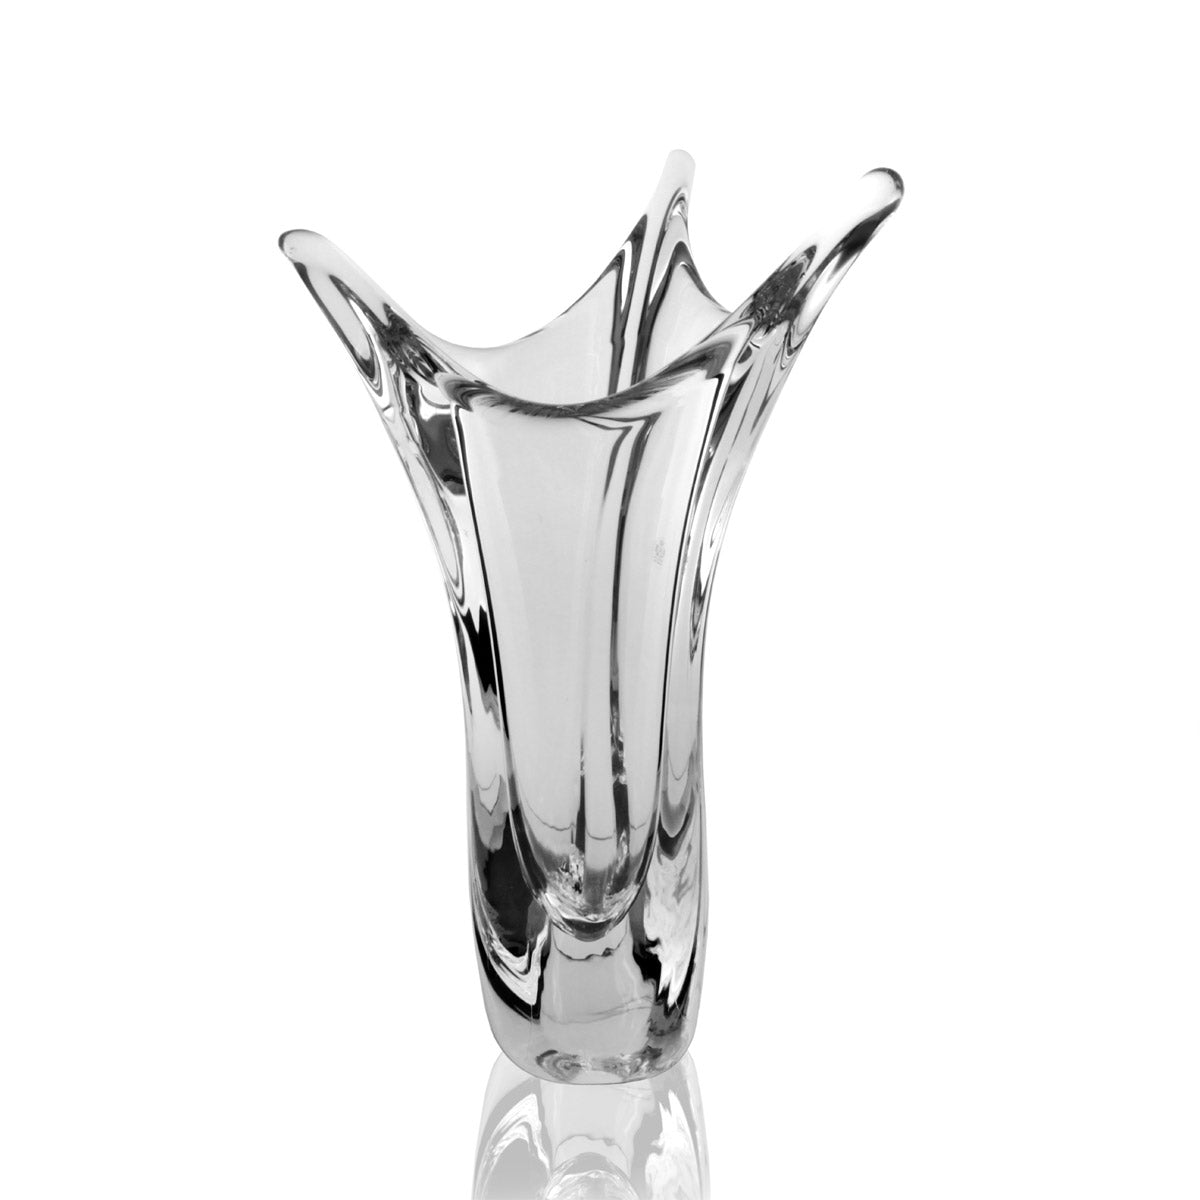 Vaso moderno in cristallo dalla forma triangolare realizzato artigianalmente da maestri artigiani